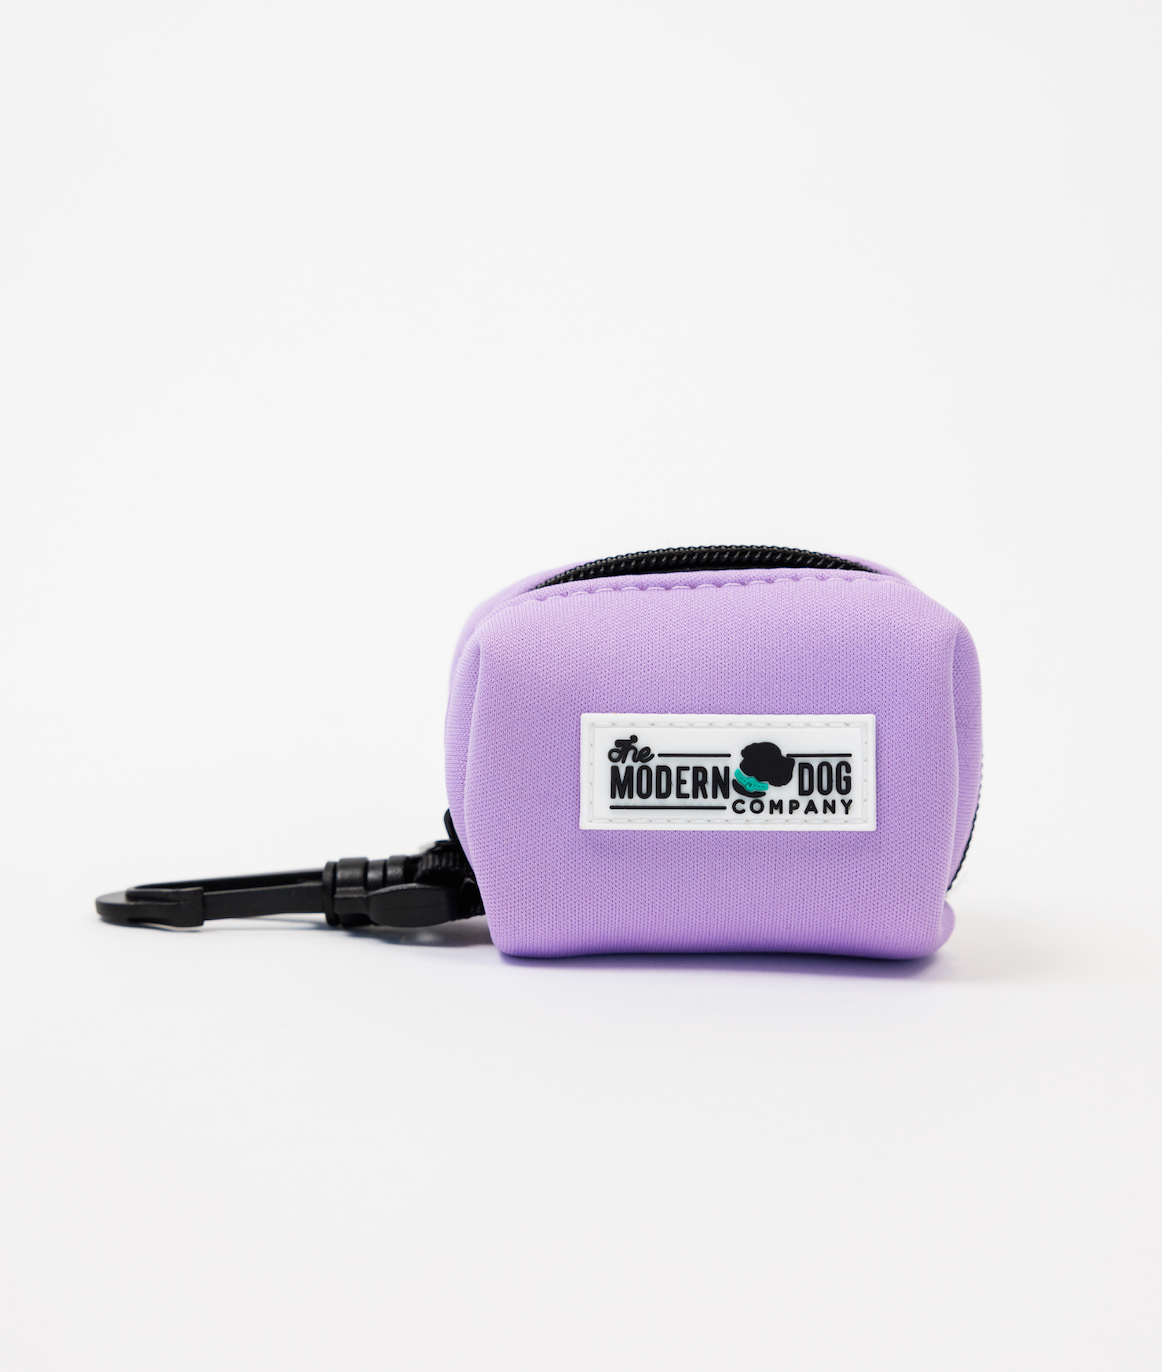 The Modern Dog Company - Blush Pink Poop Bag Holder